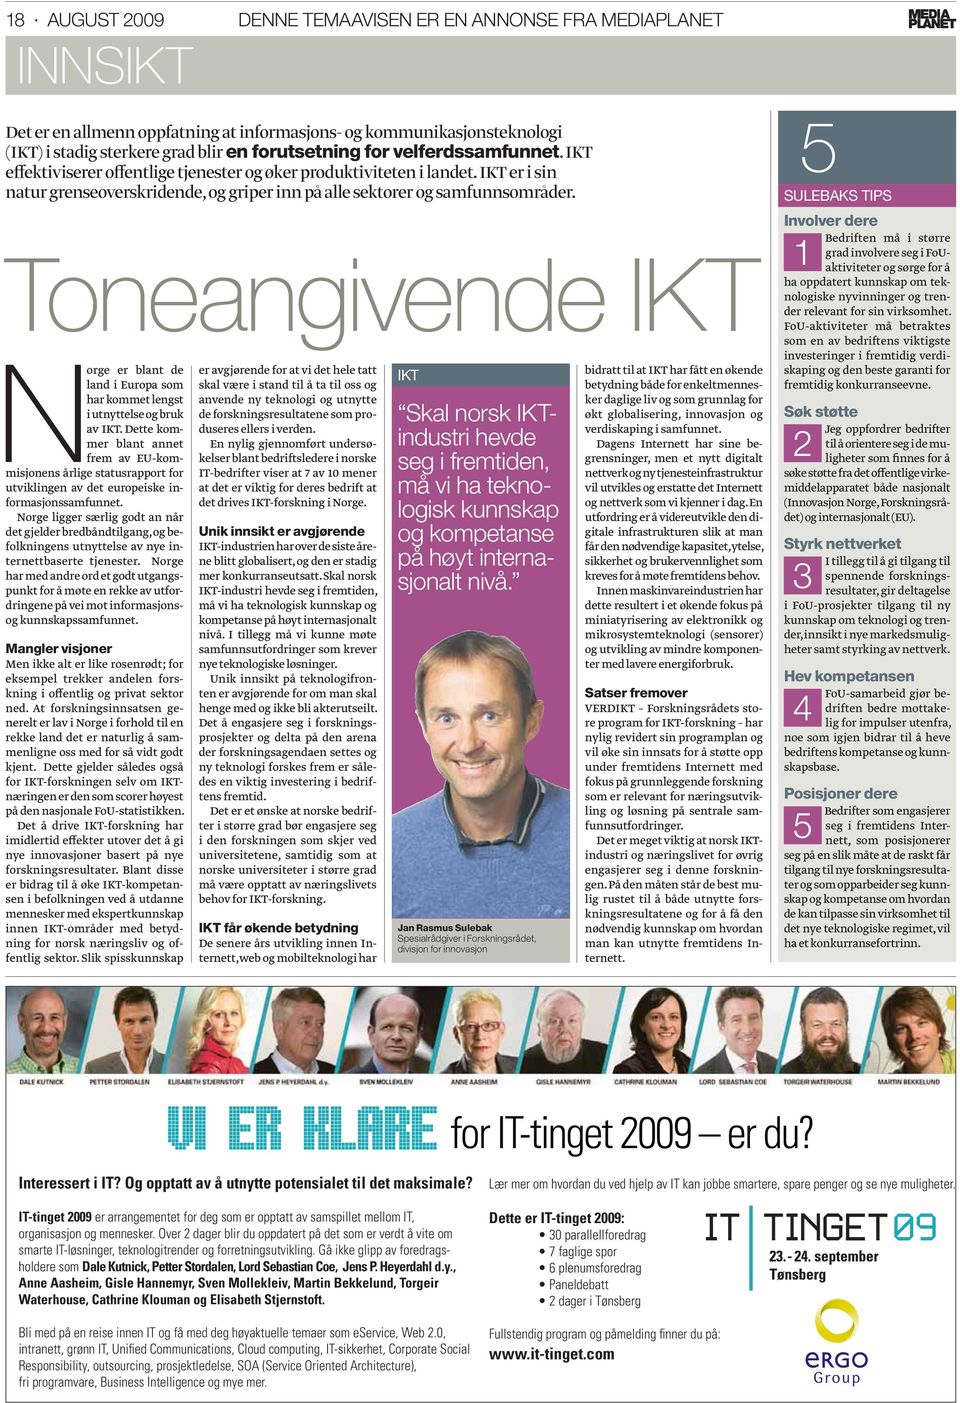 Toneangivende IKT Norge er blant de land i Europa som har kommet lengst i utnyttelse og bruk av IKT.